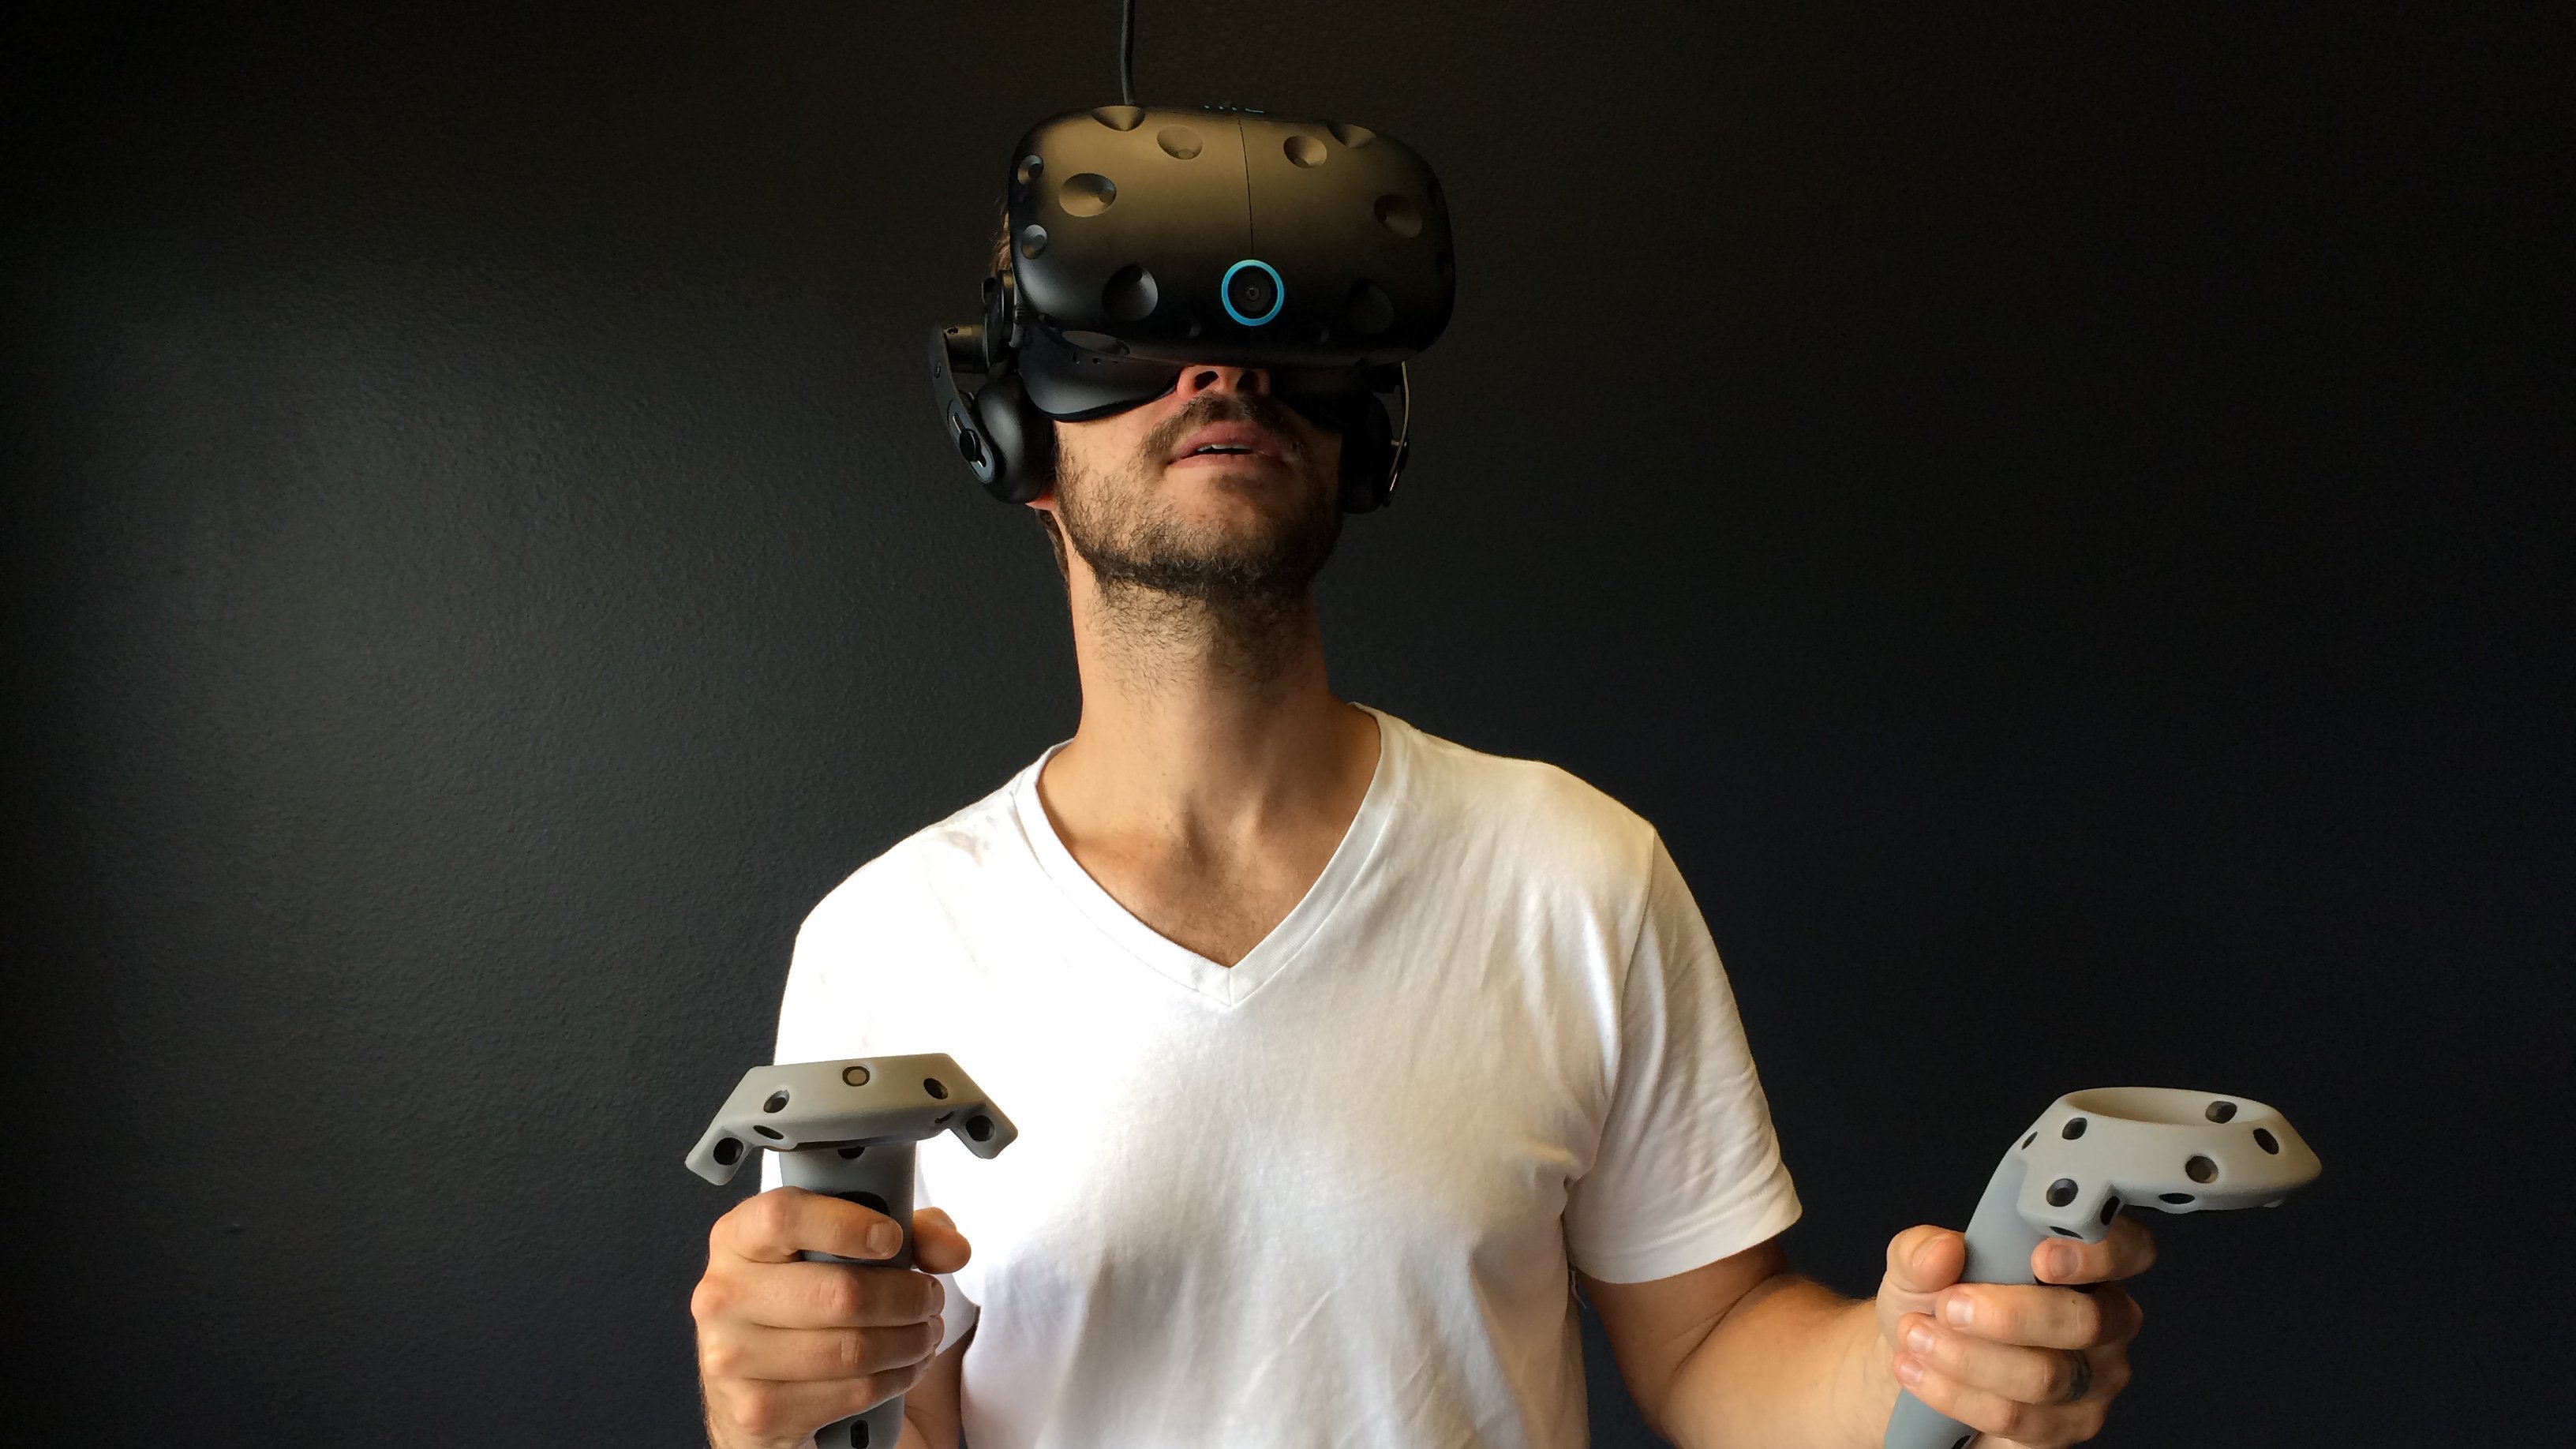 O vr. VR шлем c 360. VR шлем 360max. Шлемы и очки / head Mounted display, HMD. Шлем/очки виртуальной реальности (HMD – head Mounted display)..